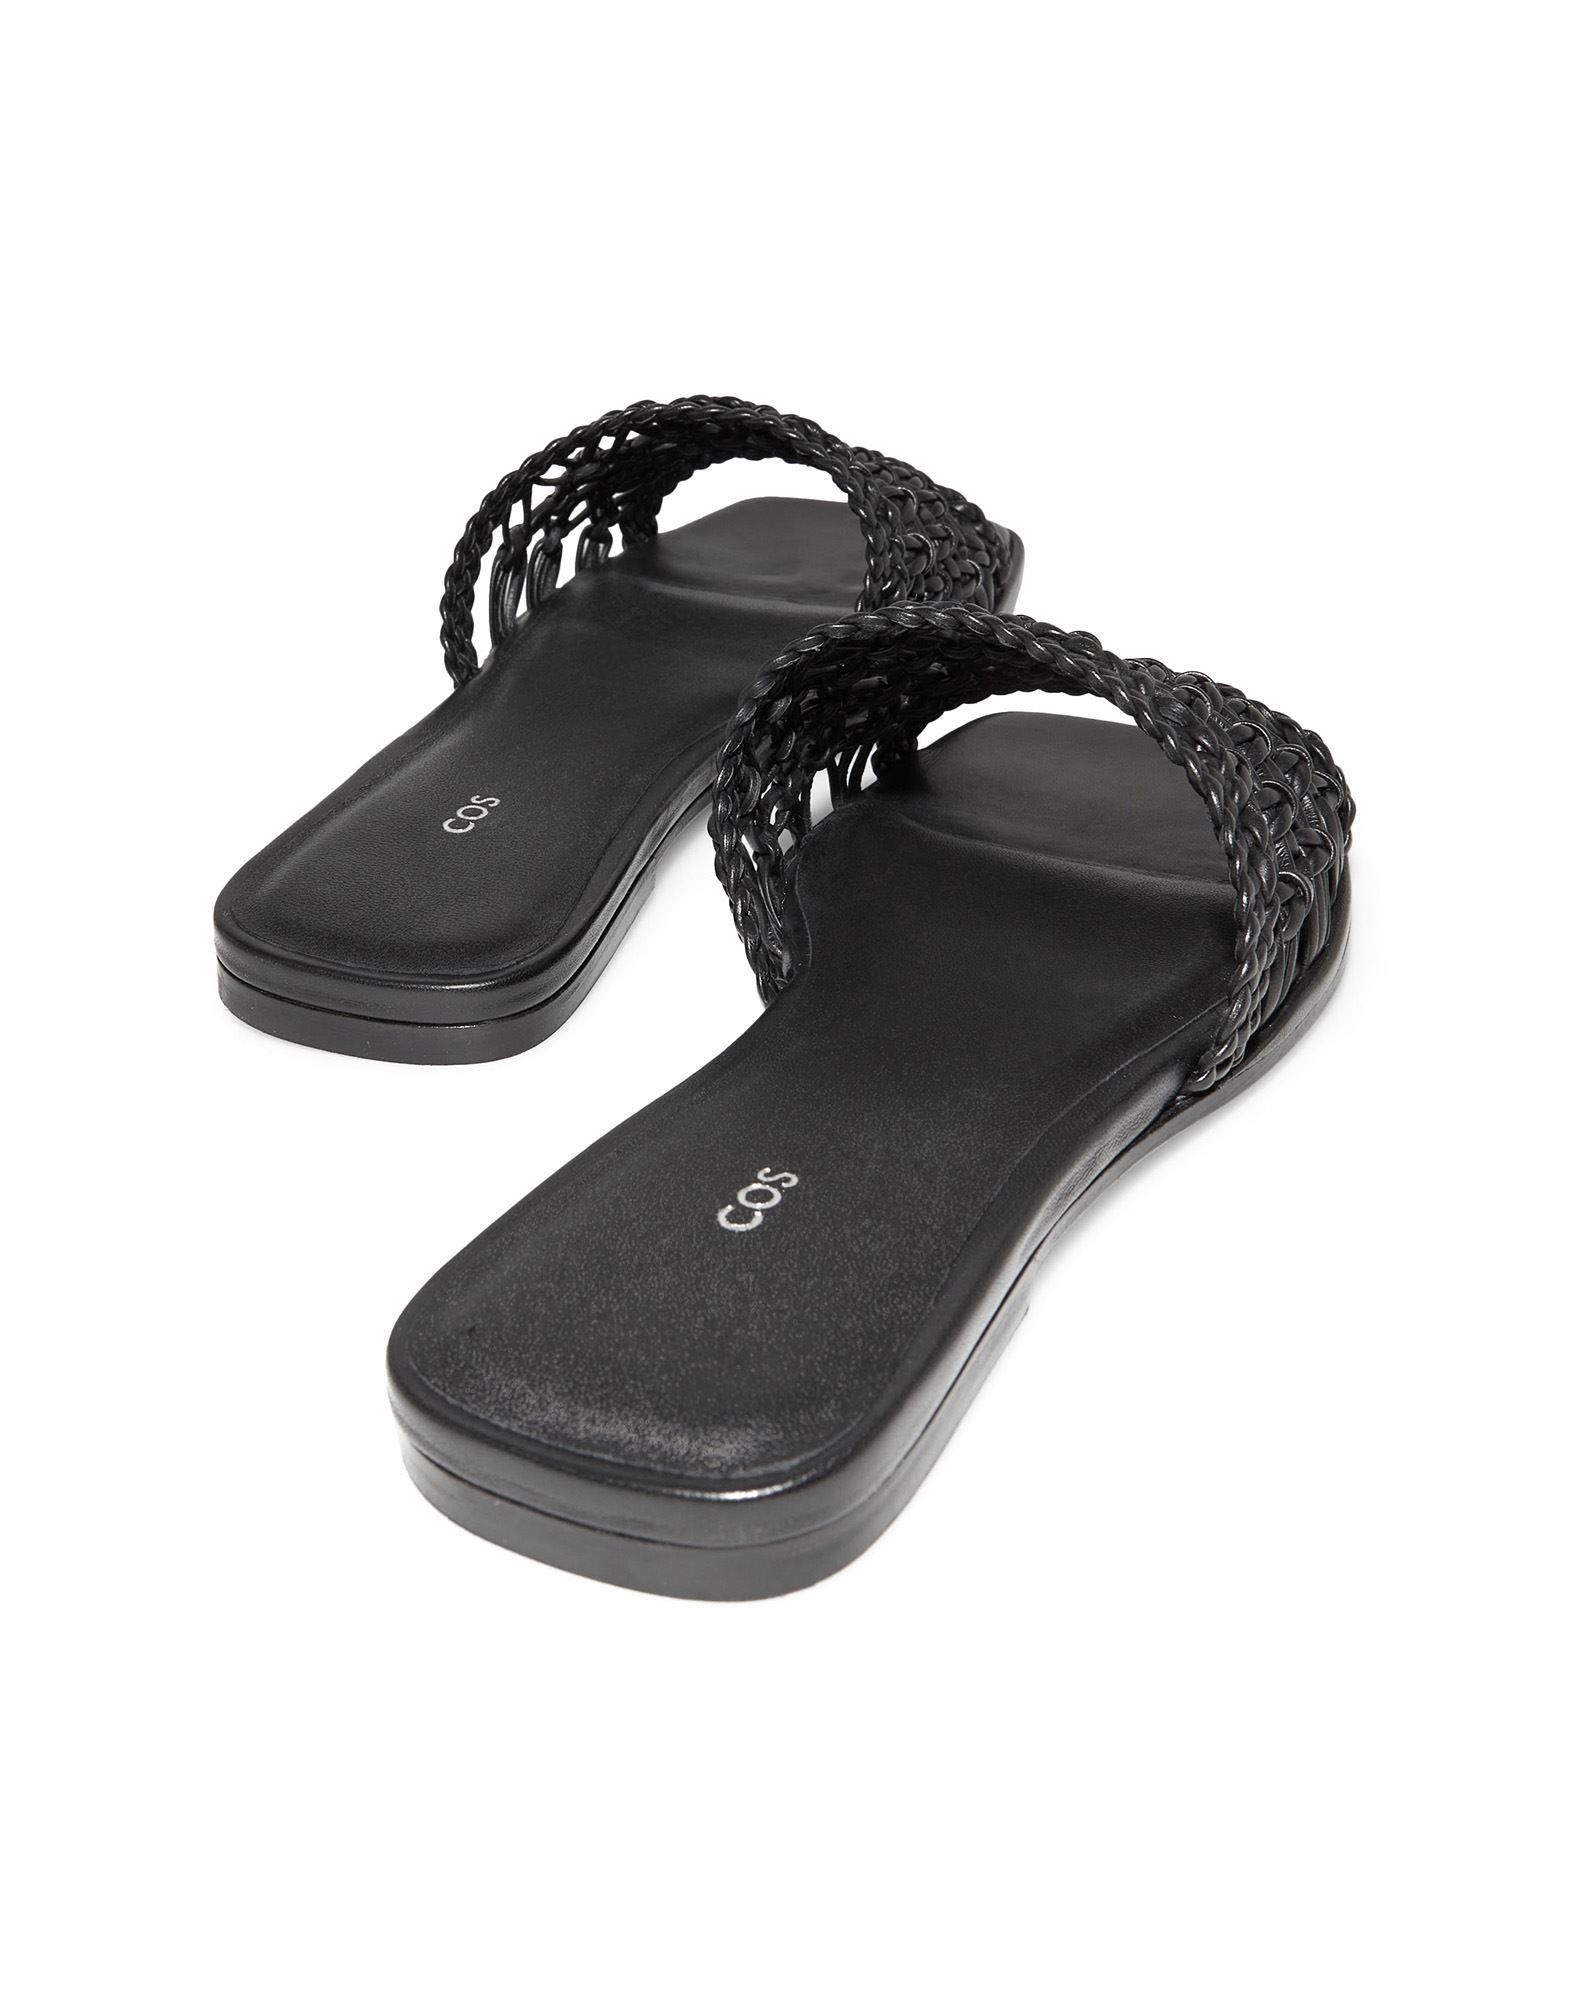 COS Sandals in Black | Lyst UK